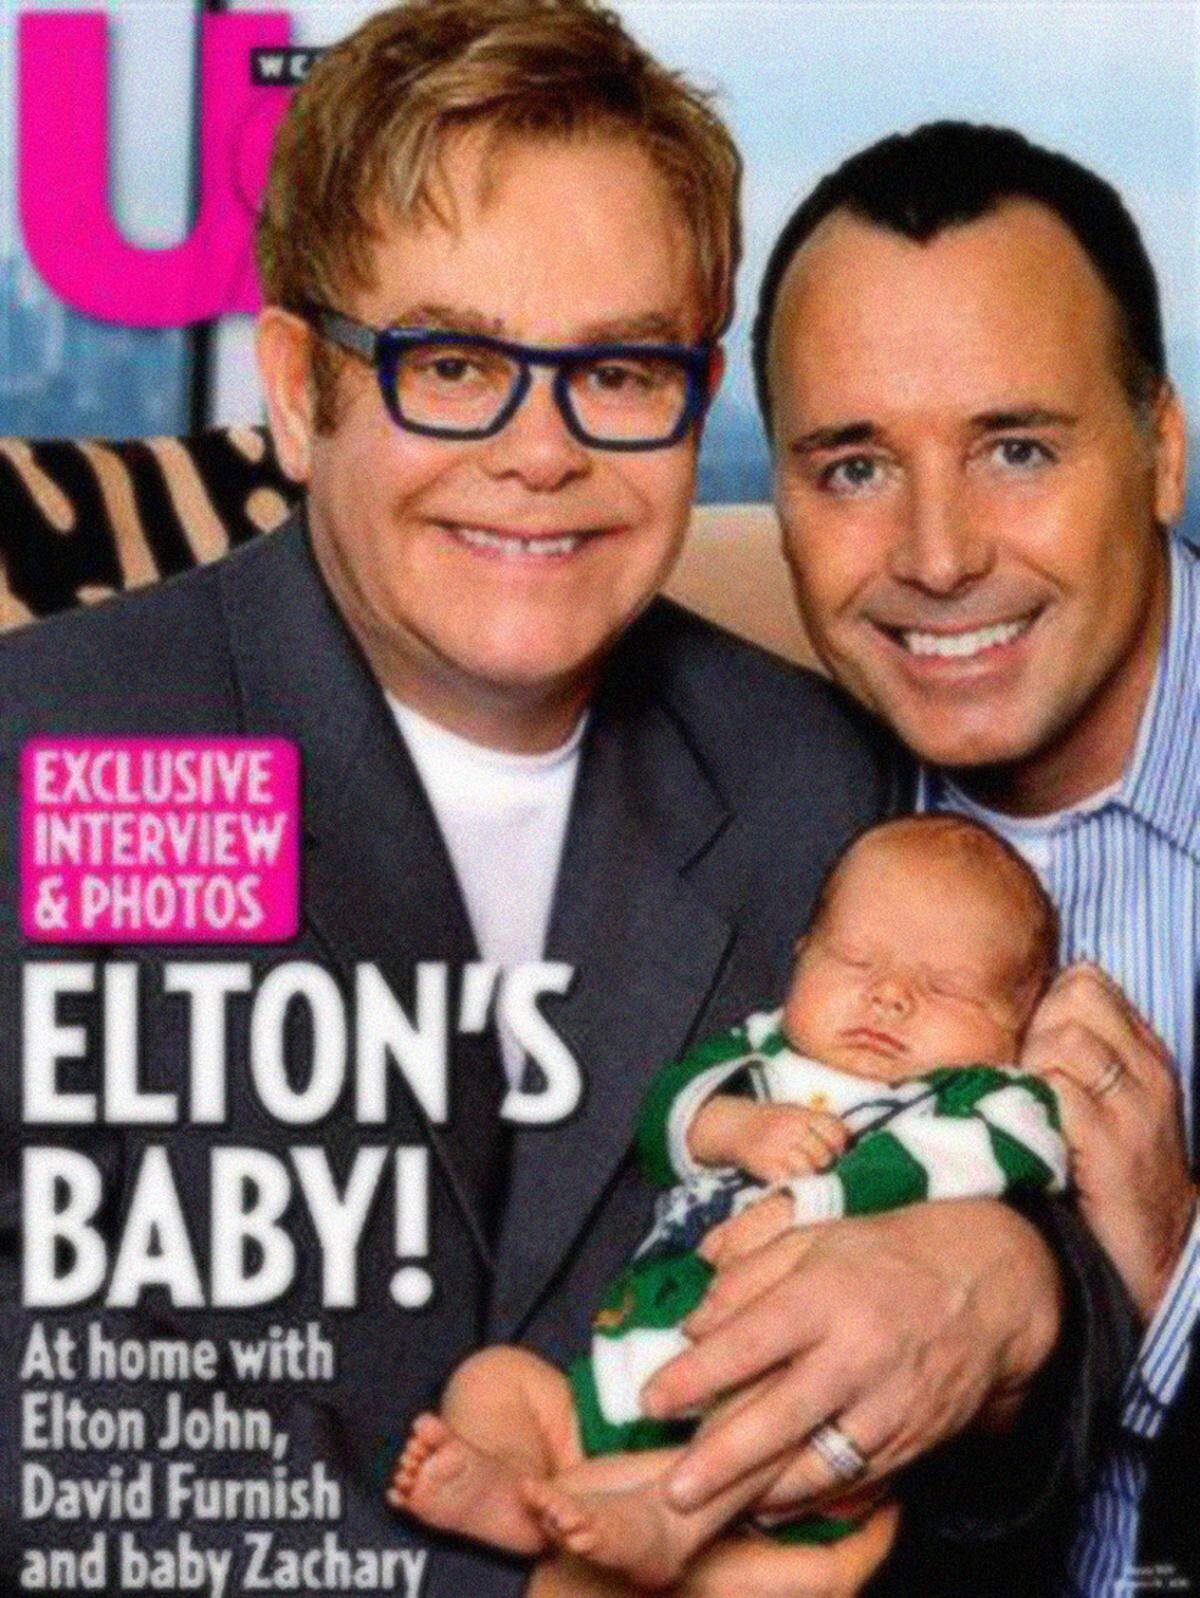 Nackte Haut sah man am Cover der US Weekly mit Elton John und seiner Familie 2011 nicht, trotzdem wurde es mit einem sogenannten "Familienschild" in einem Supermarkt in Arkansas verdeckt. Der Grund: Es sei für Kinder zu anstößig.